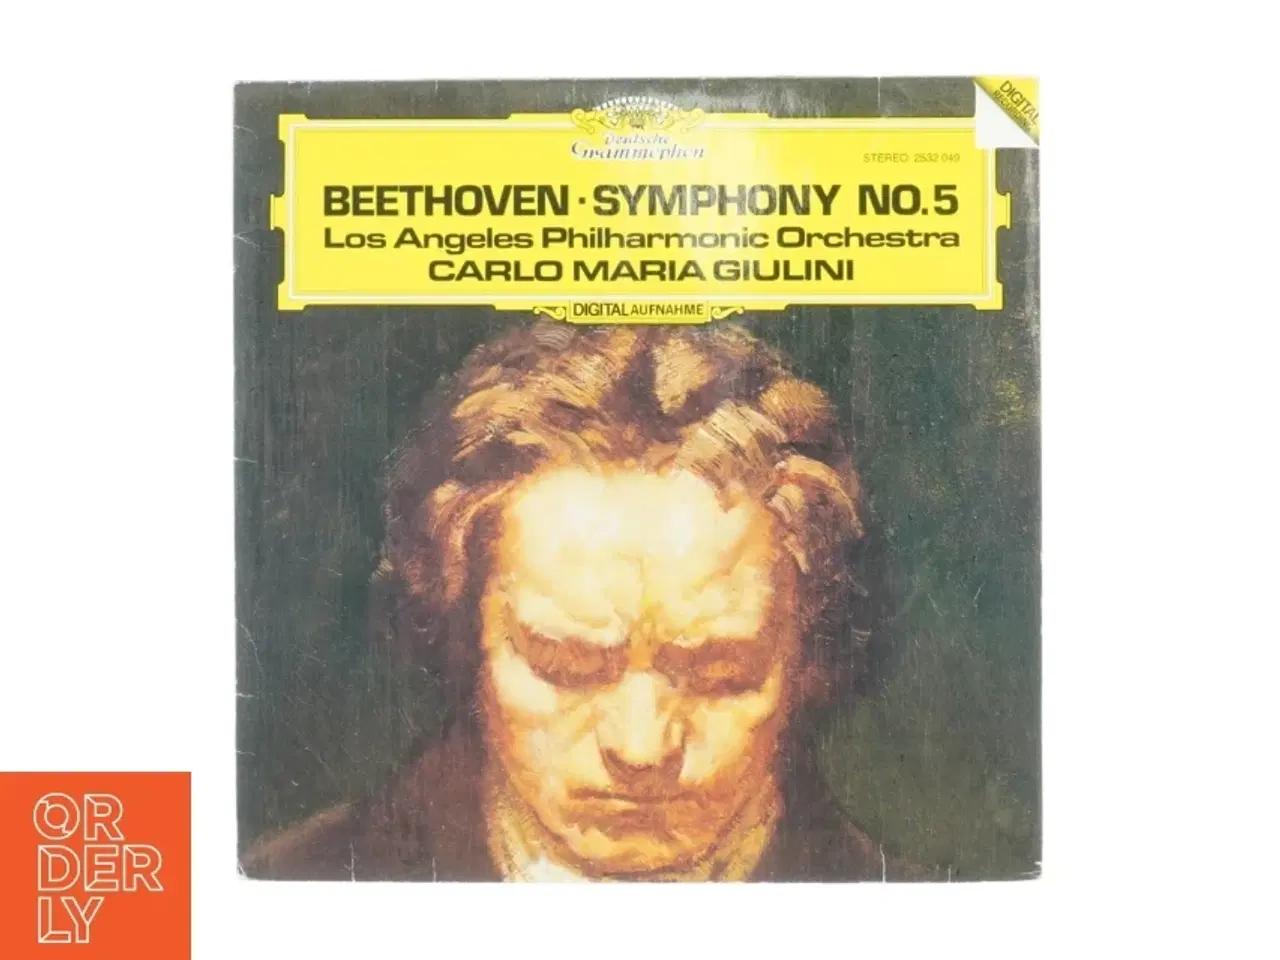 Billede 1 - Beethoven, Symphony no 5 fra Digital Recording (str. 30 cm)